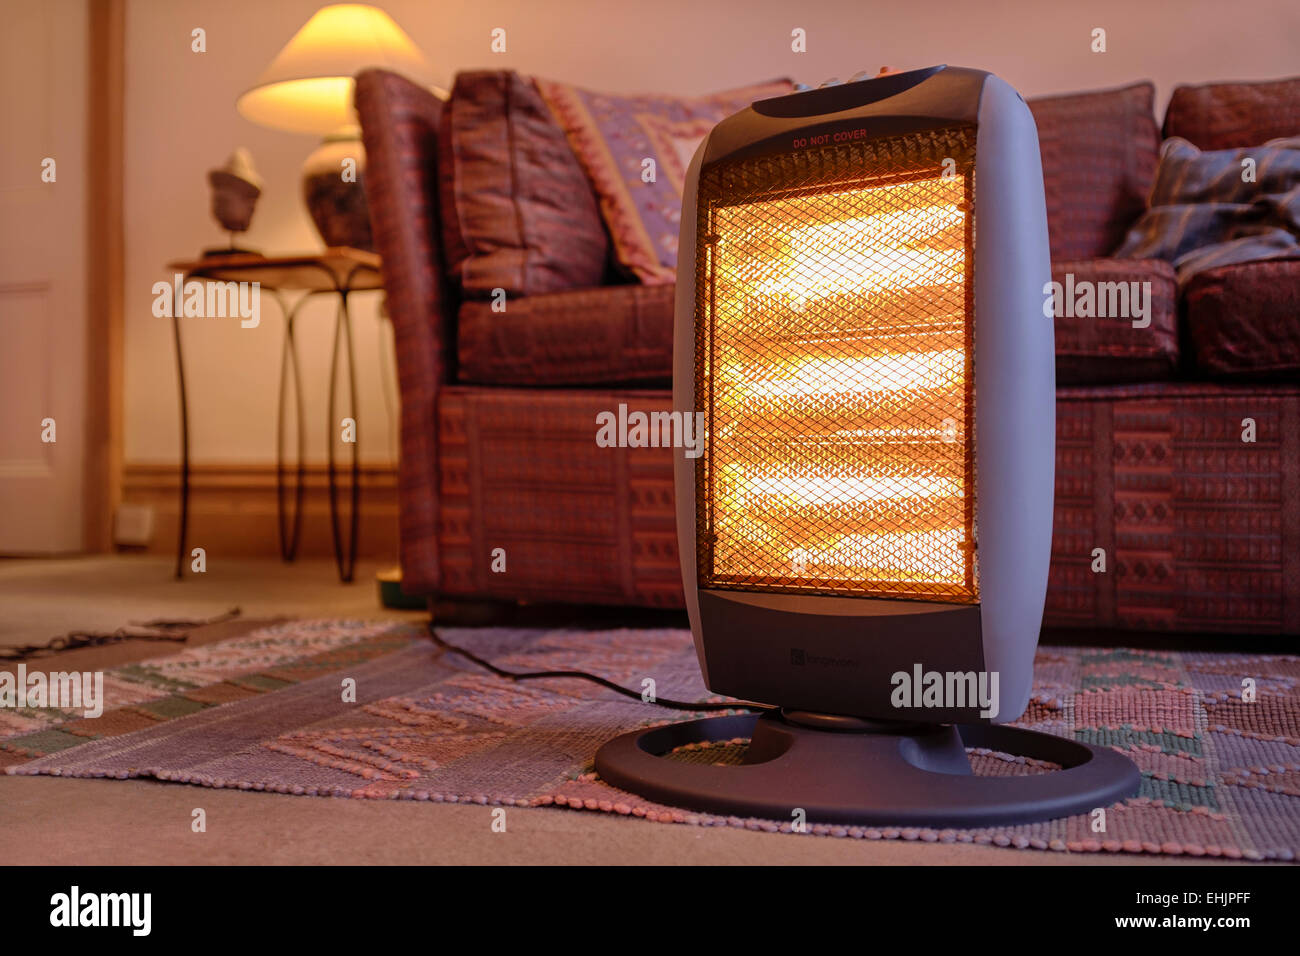 Calefactor halógeno eléctrico portátil en el interior del hogar. Foto de stock